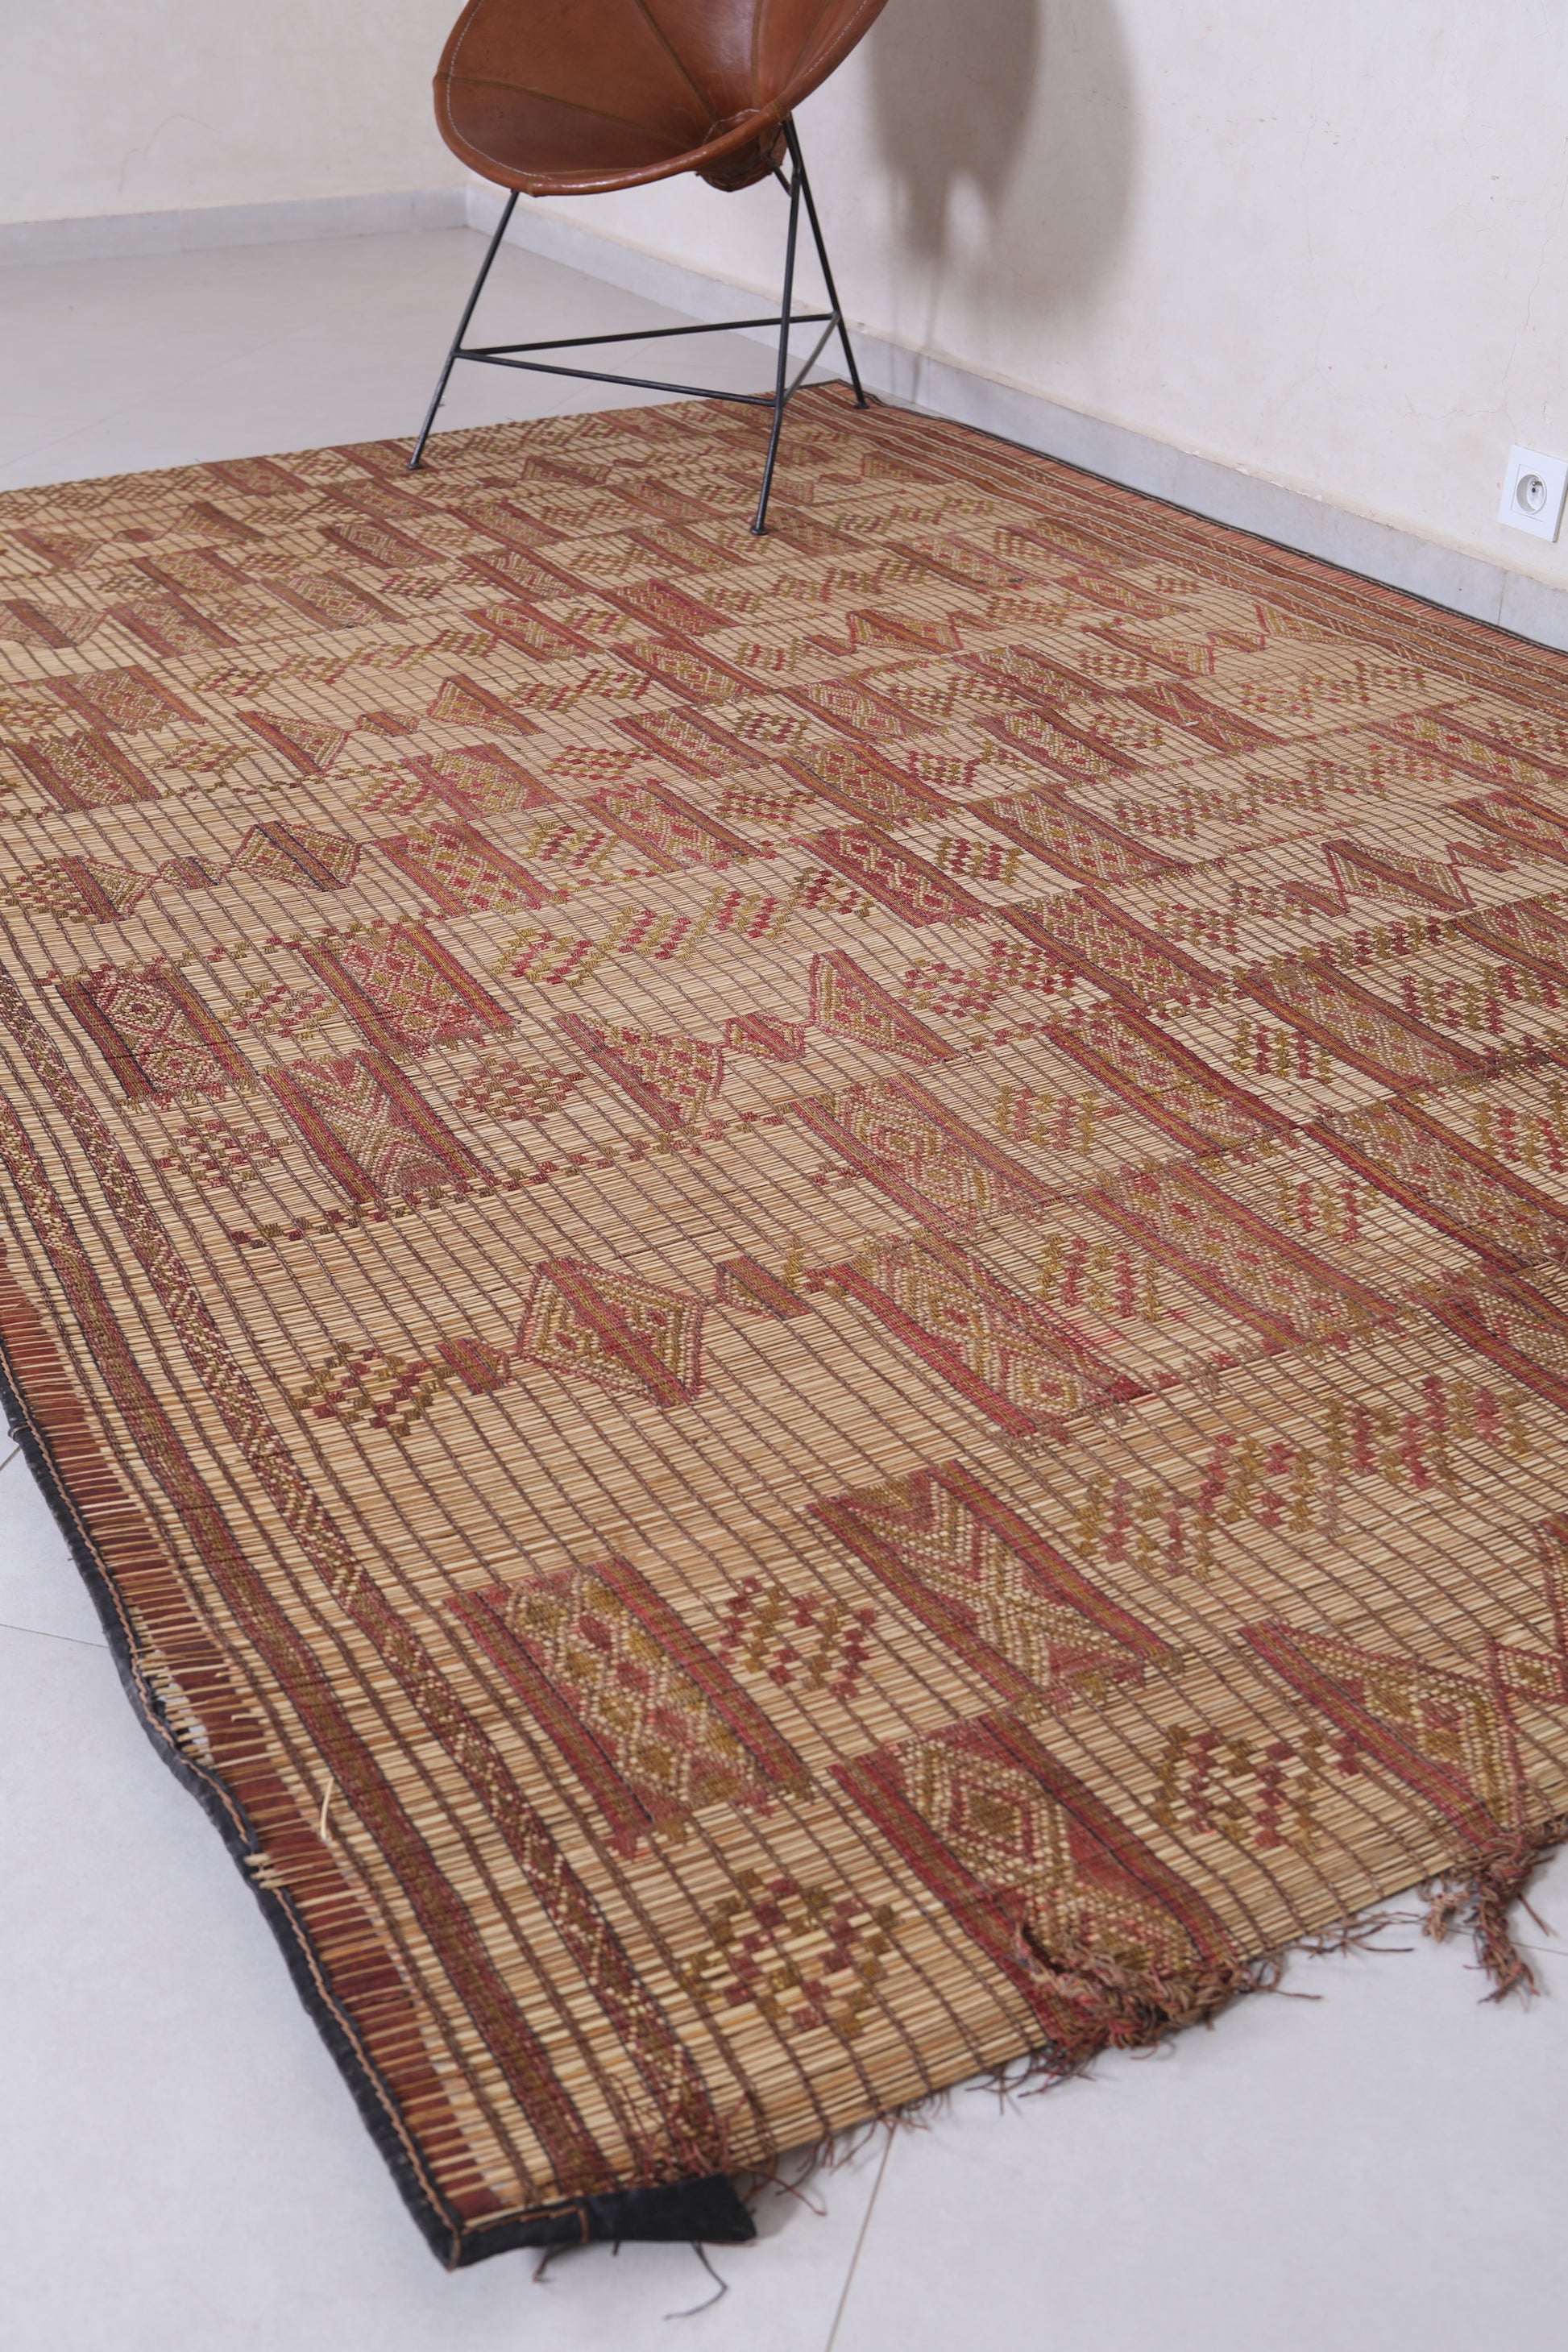 Mauritanian rug 5.9 X 9.1 Feet